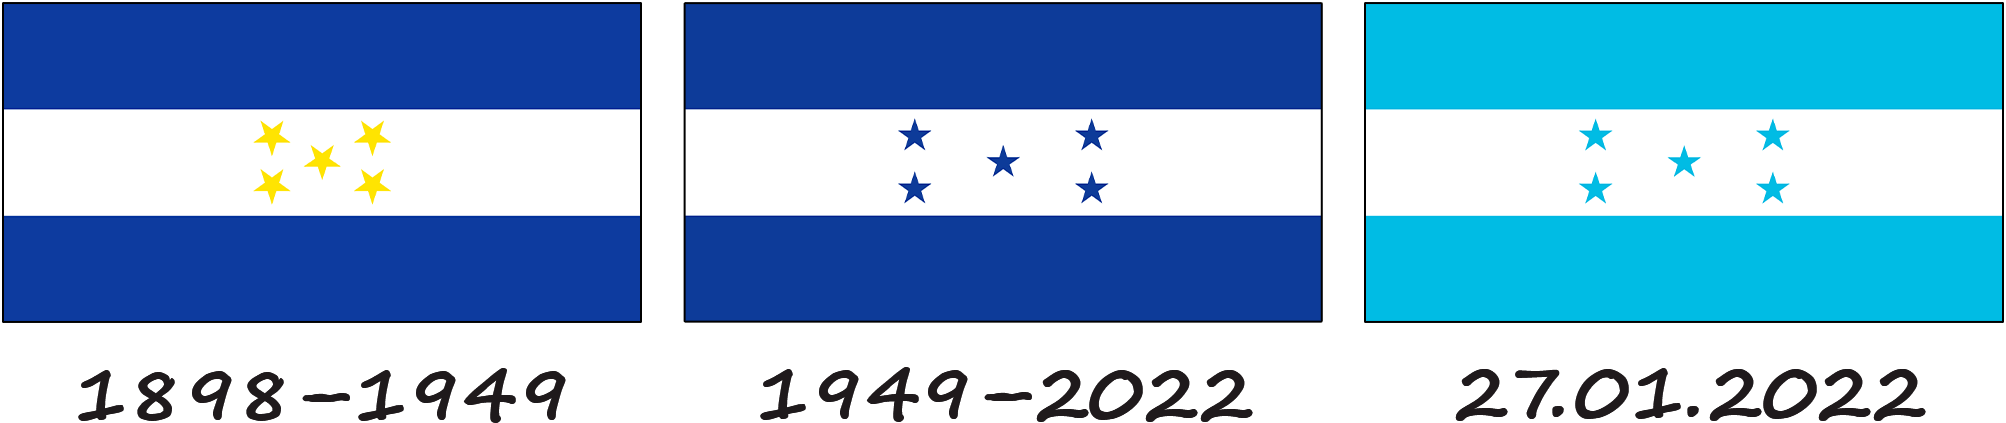 Historia de la bandera de Honduras